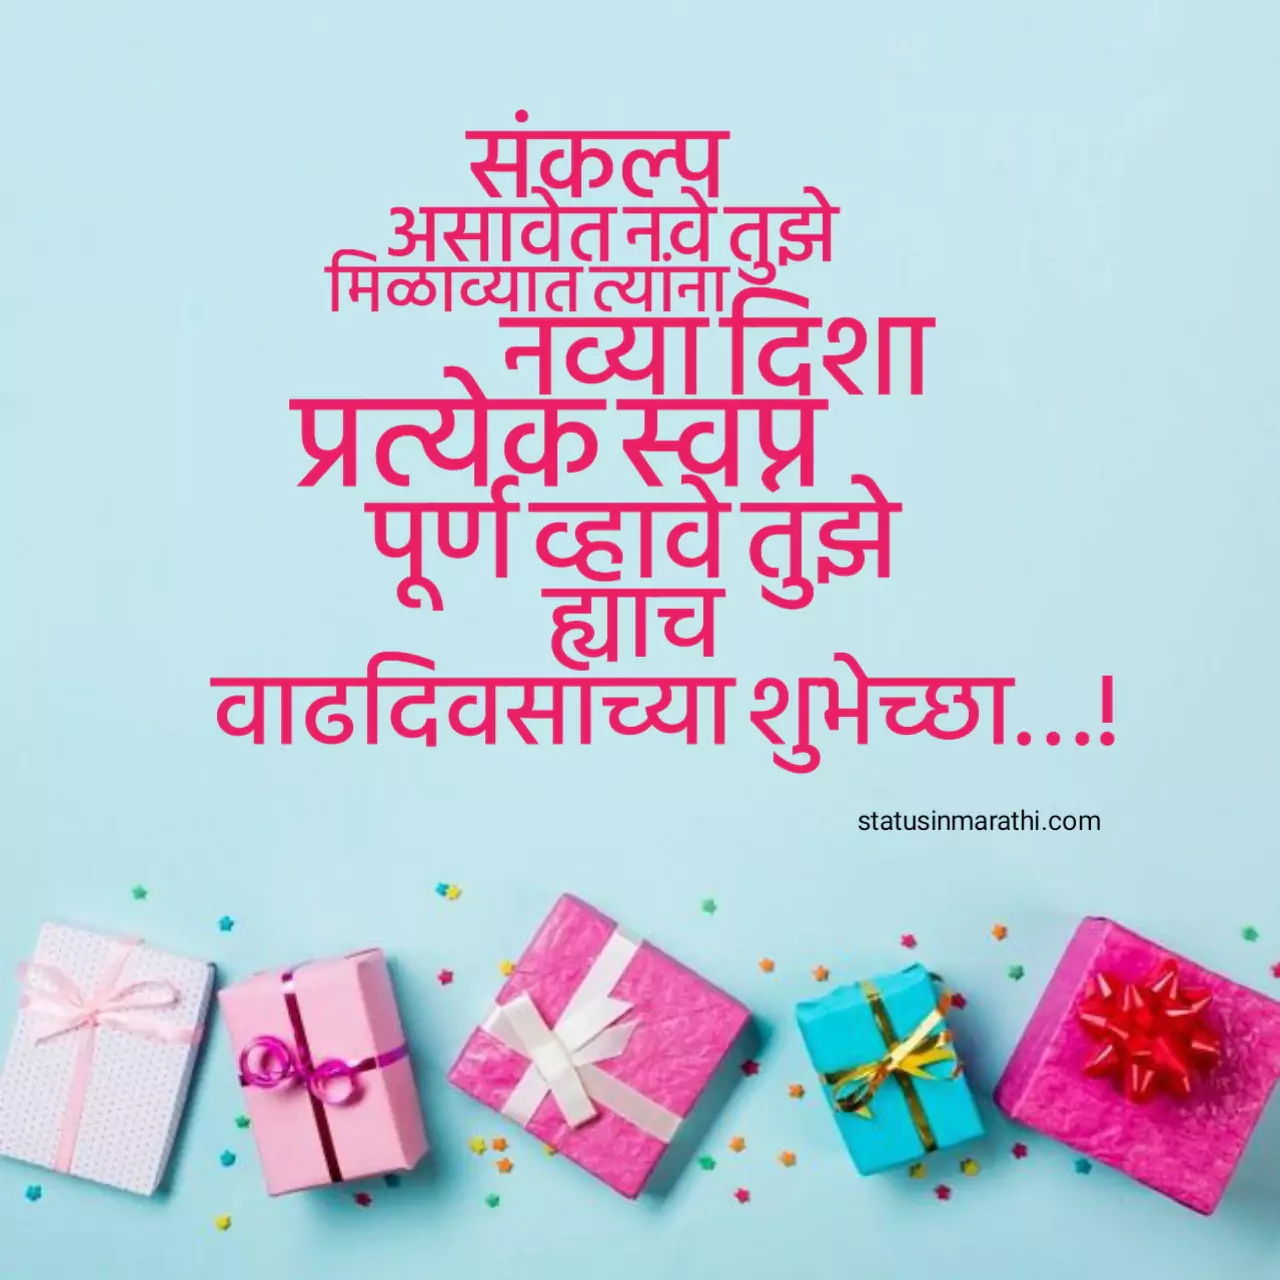 Happy Birthday quotes in marathi